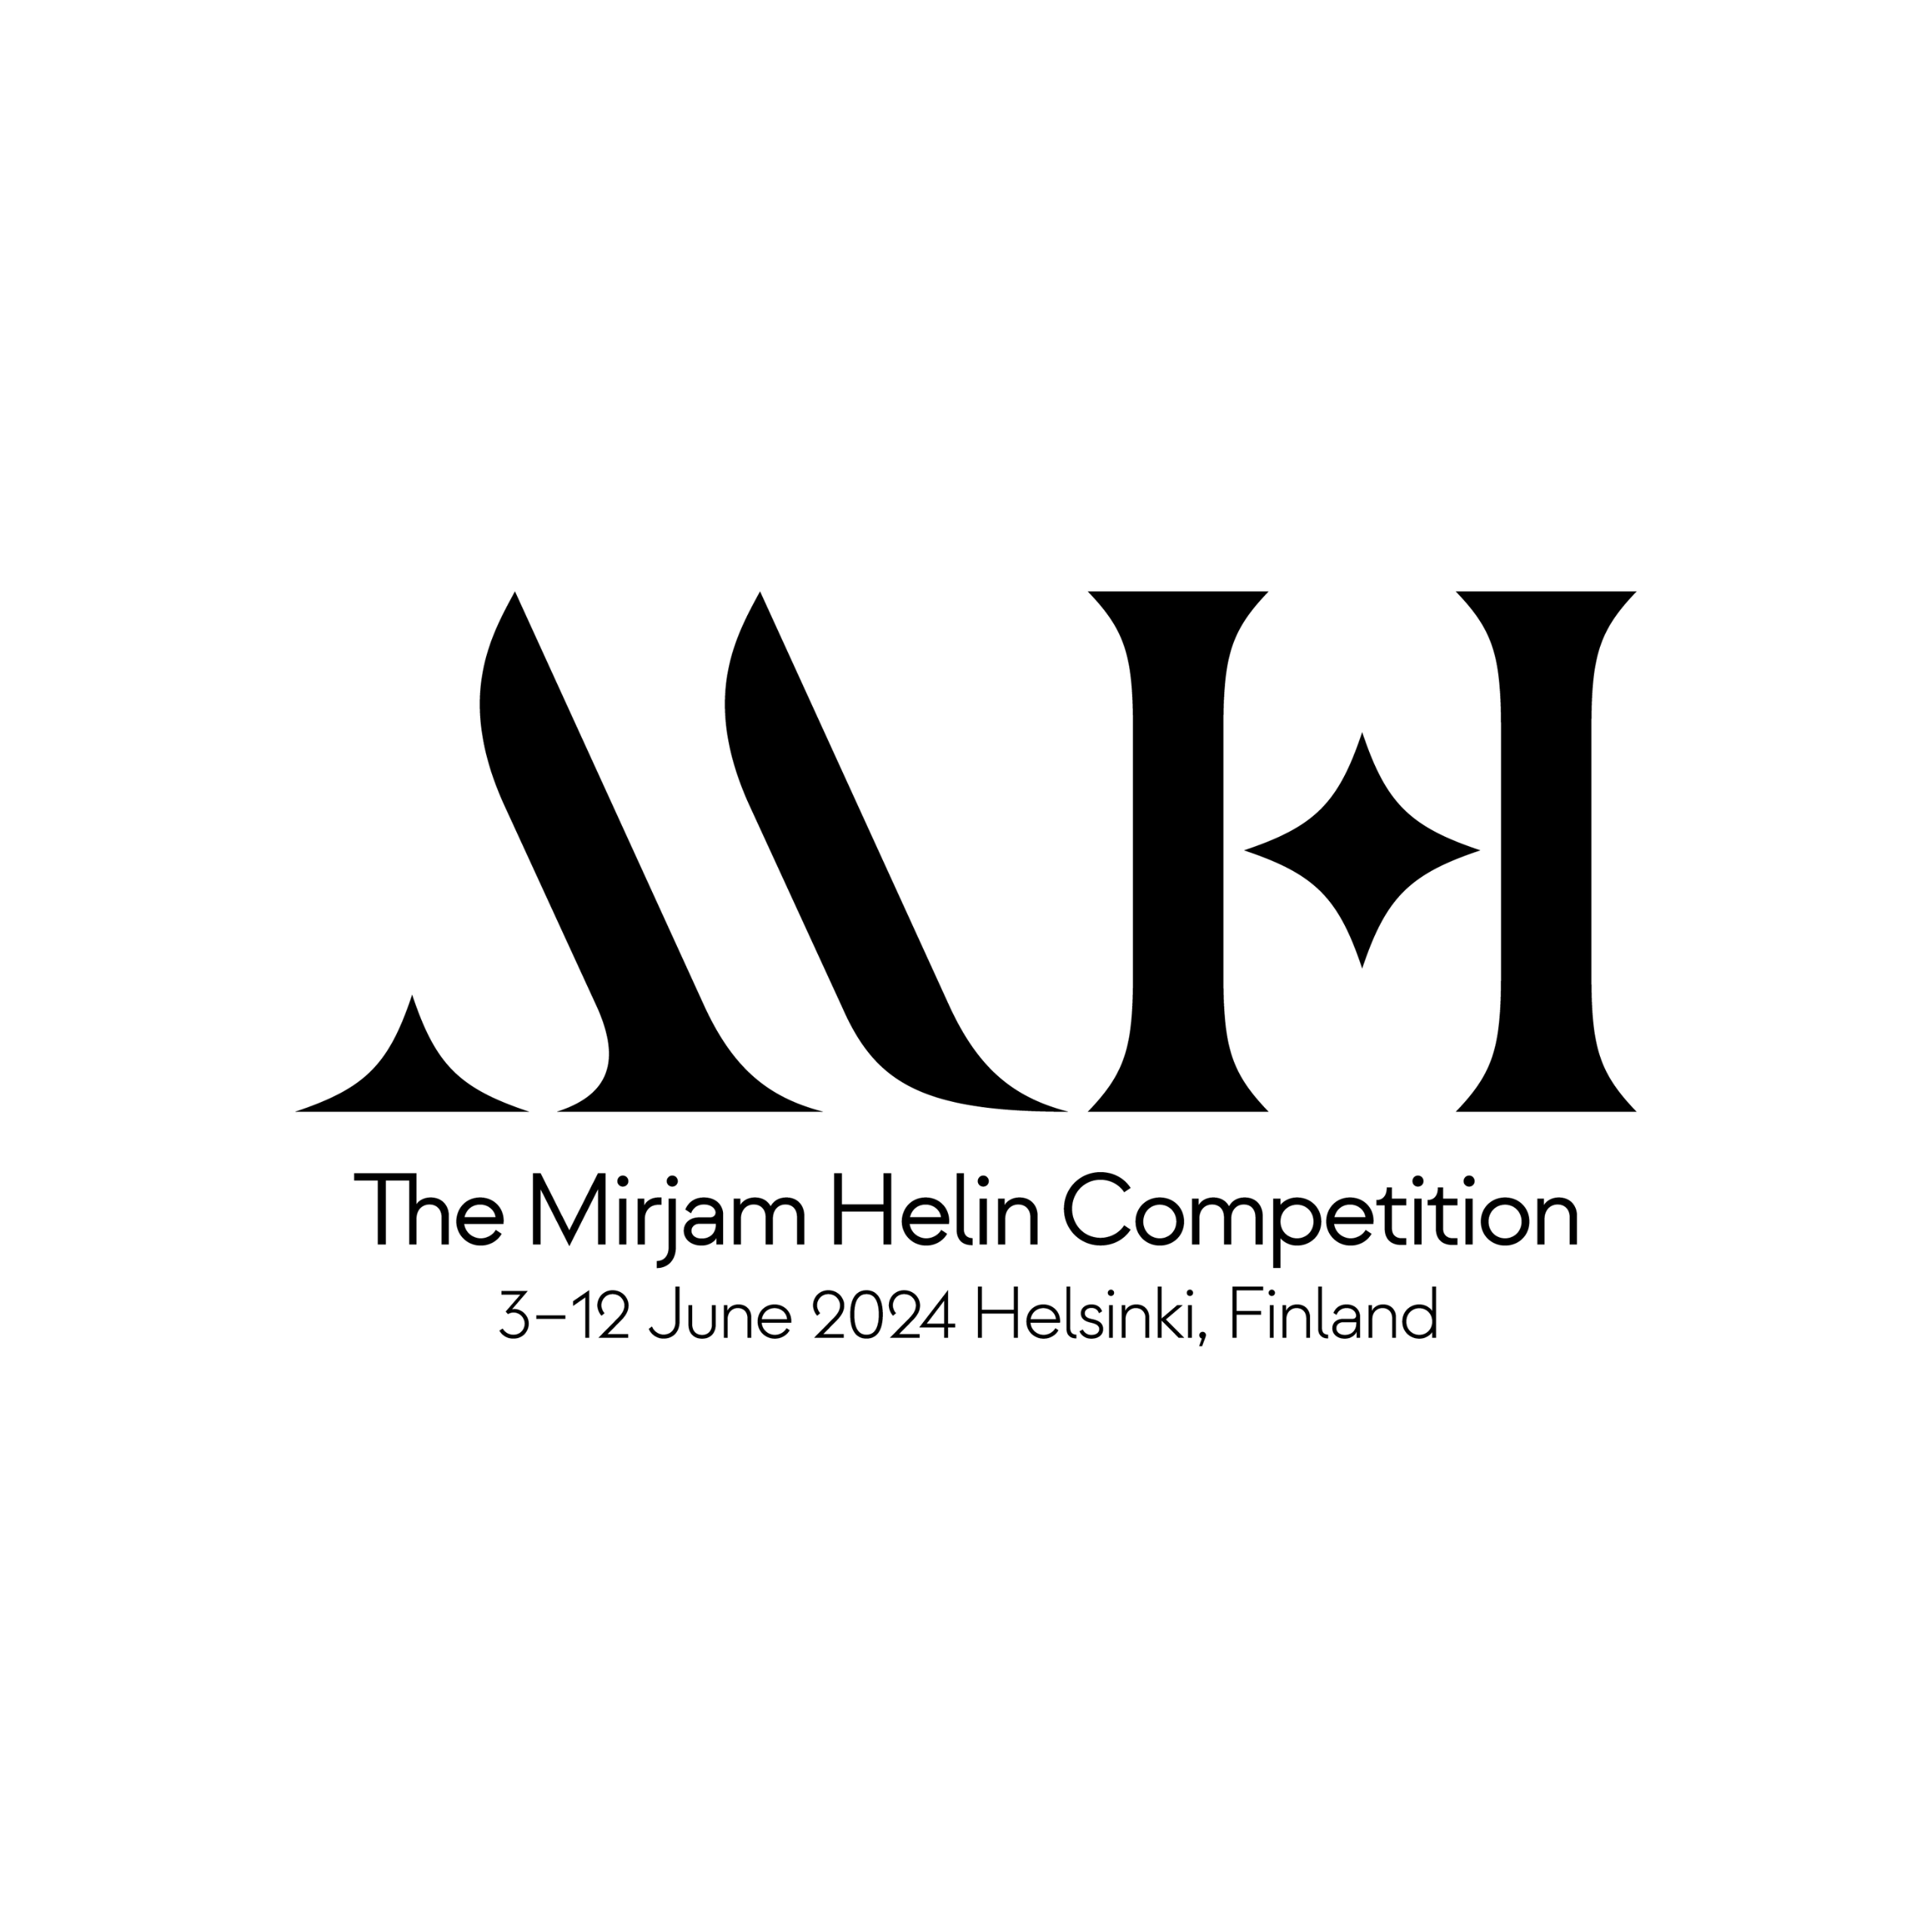 The Mirjam Helin Competition logo. 3-12 June 2024 Helsinki, Finland.